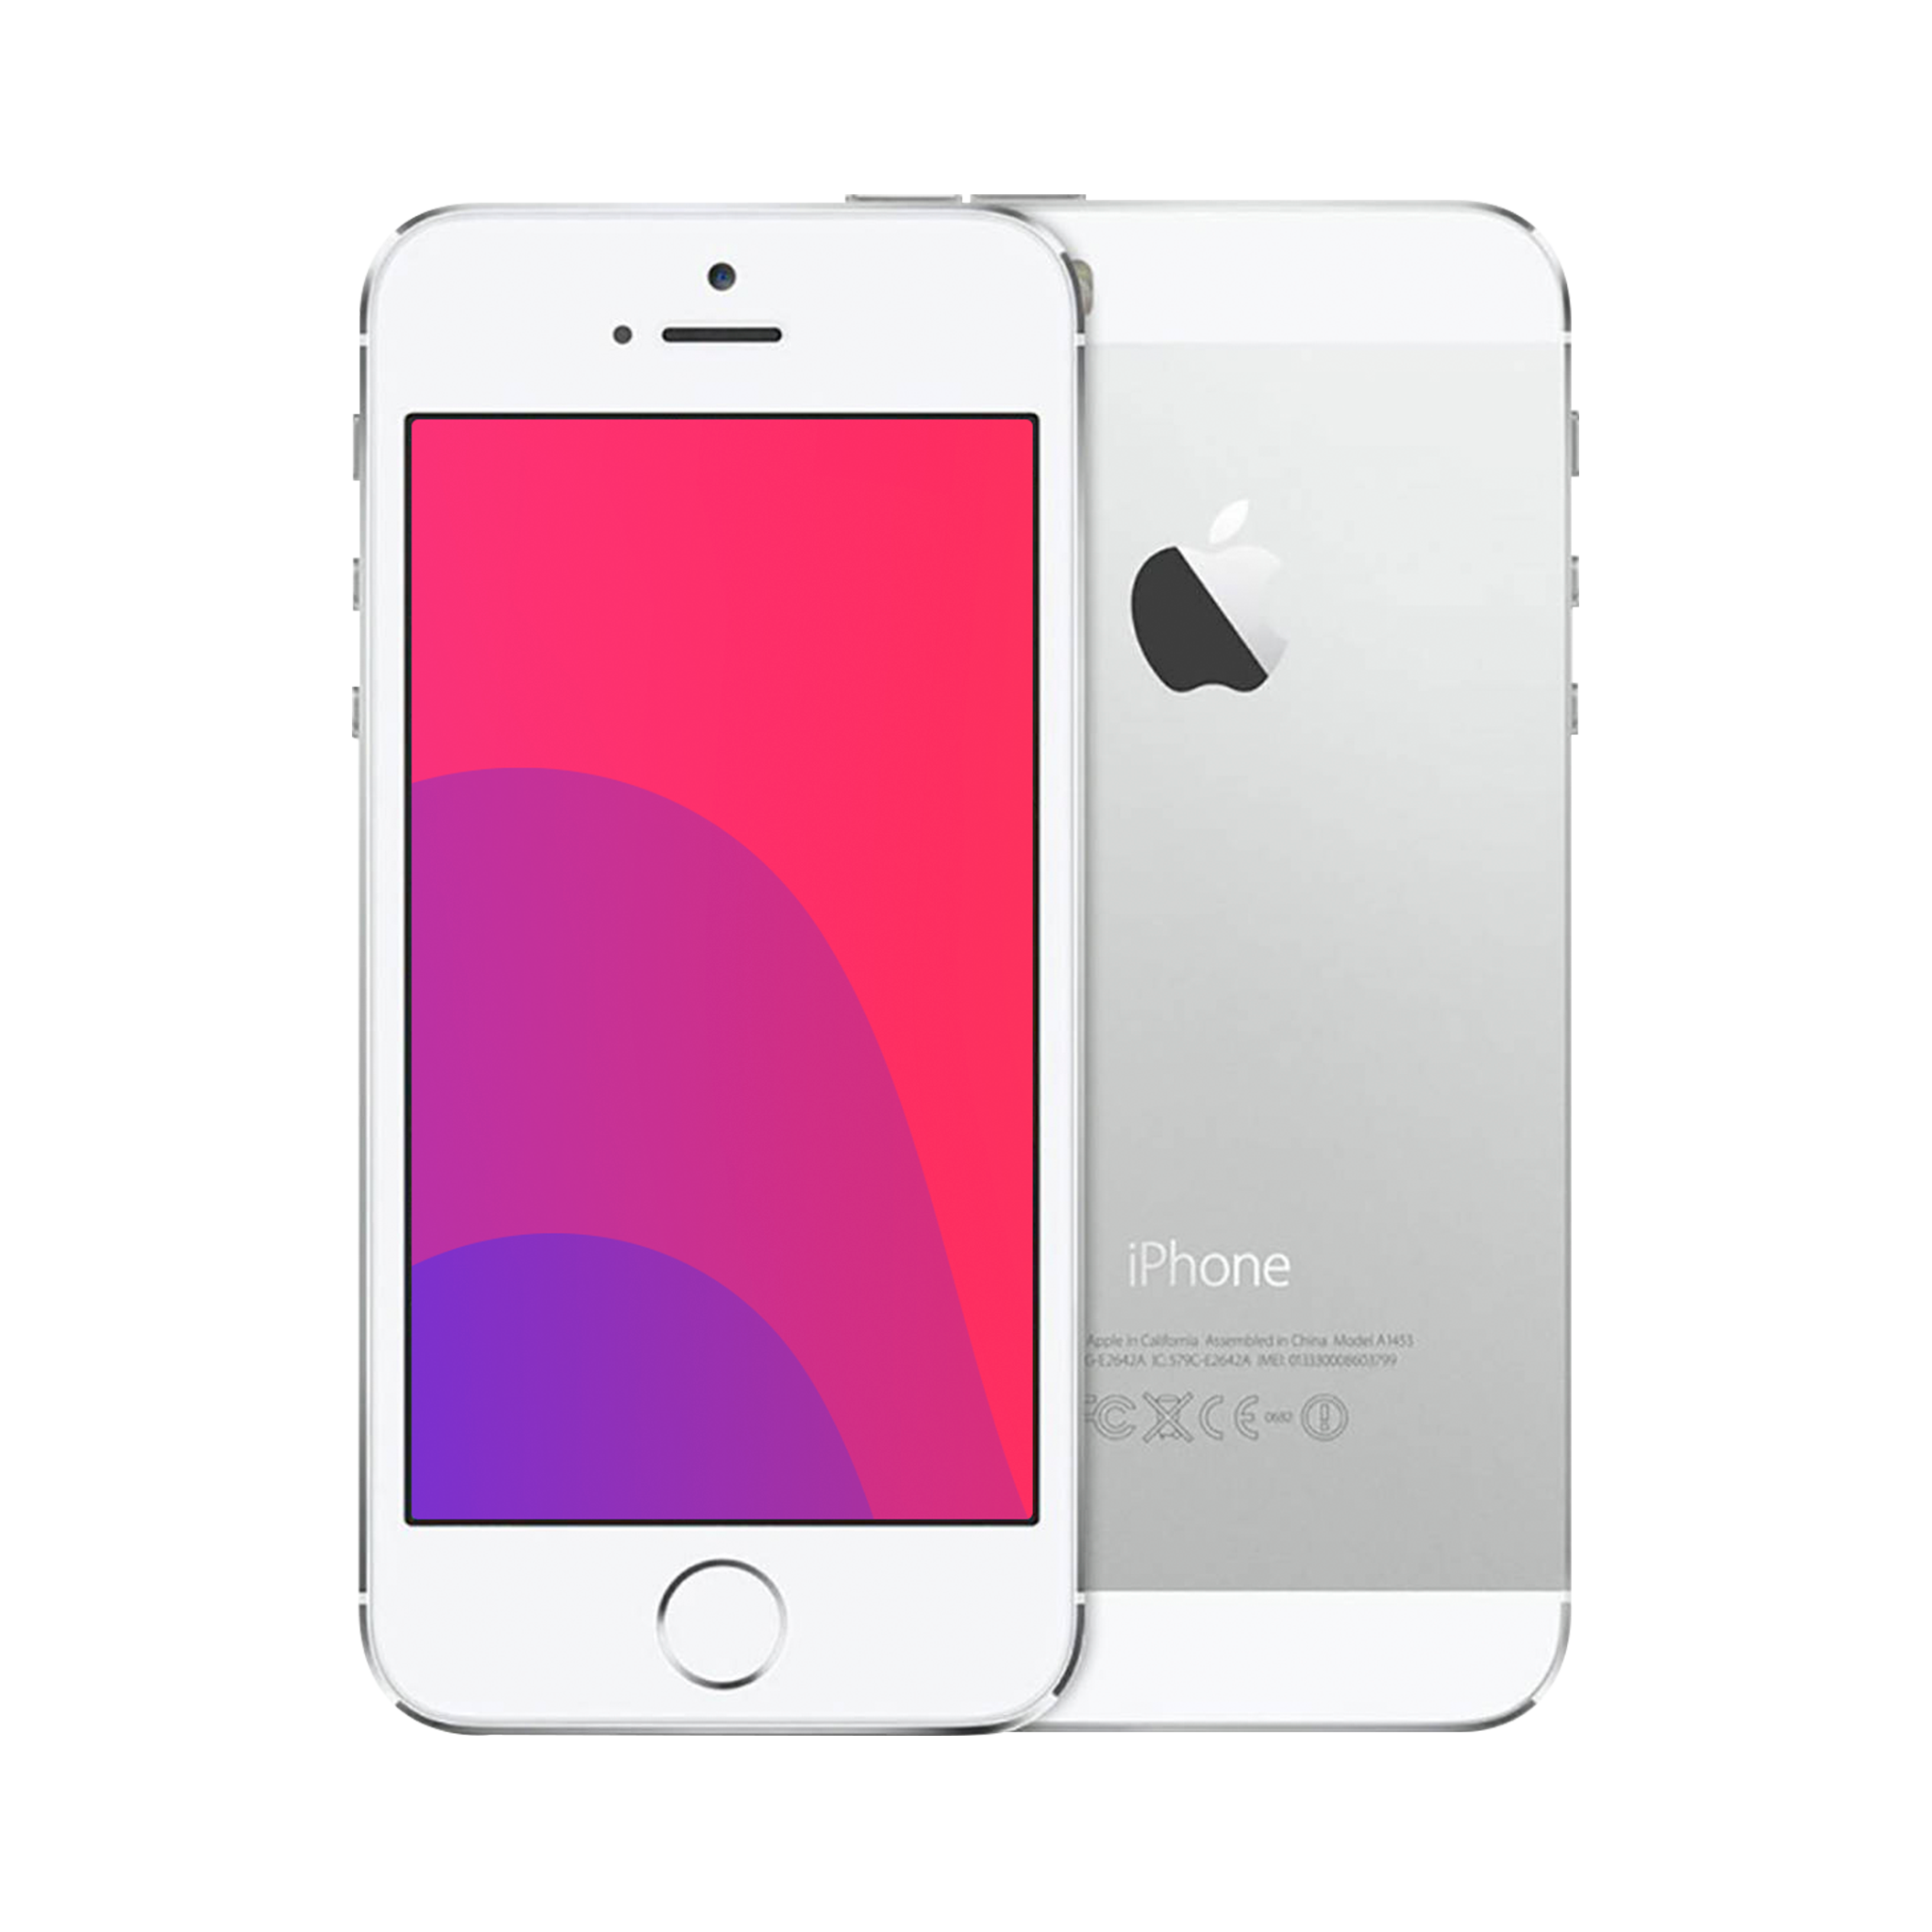 iPhone 5s Silver 32 GB au バッテリー交換済み - スマートフォン本体